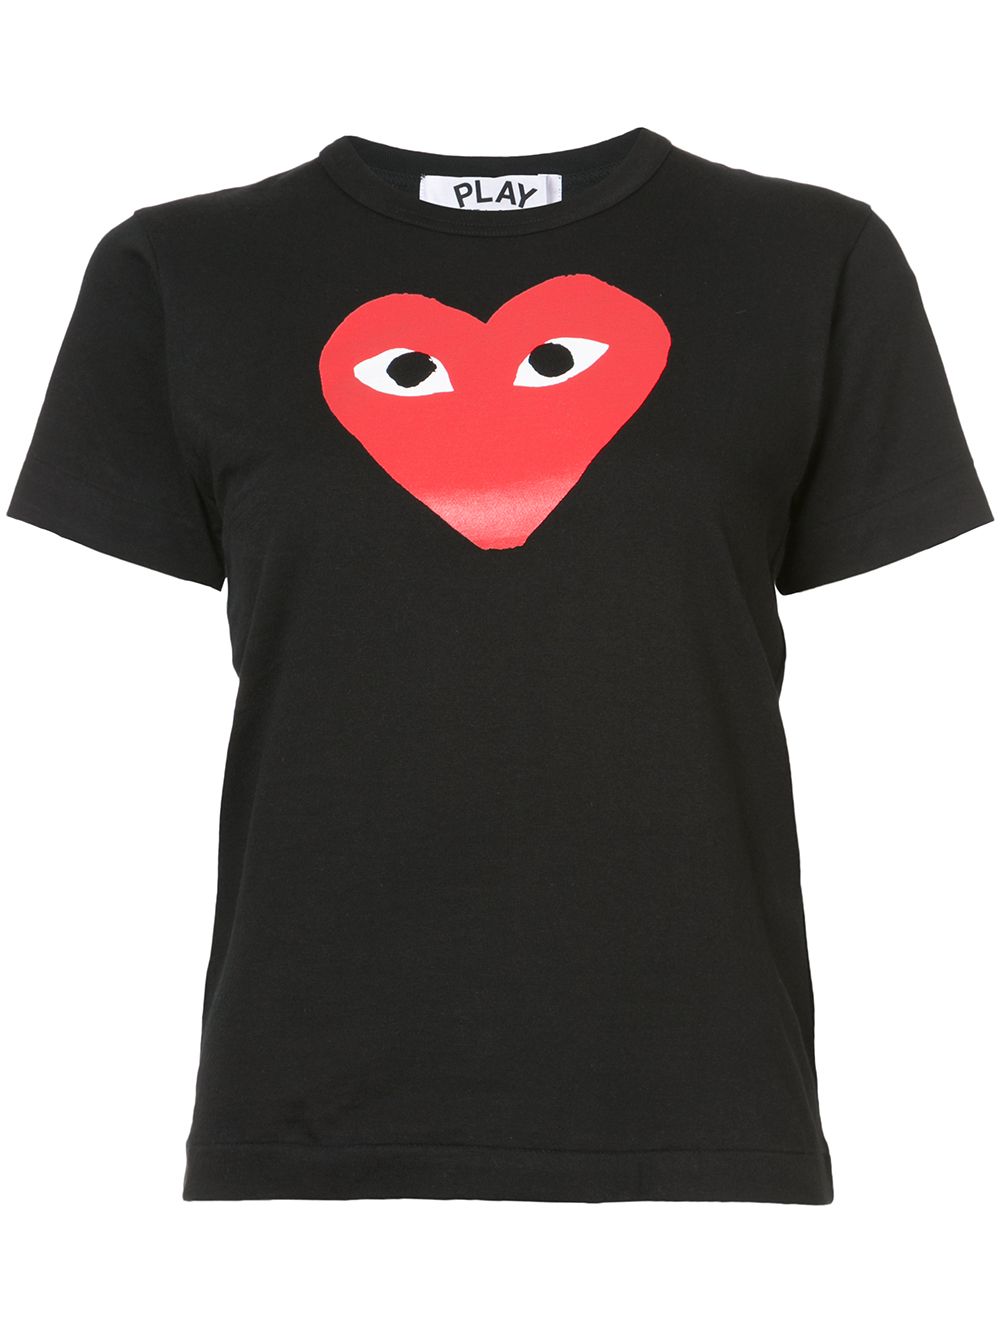 T-shirt girocollo nera con stampa cuore rosso